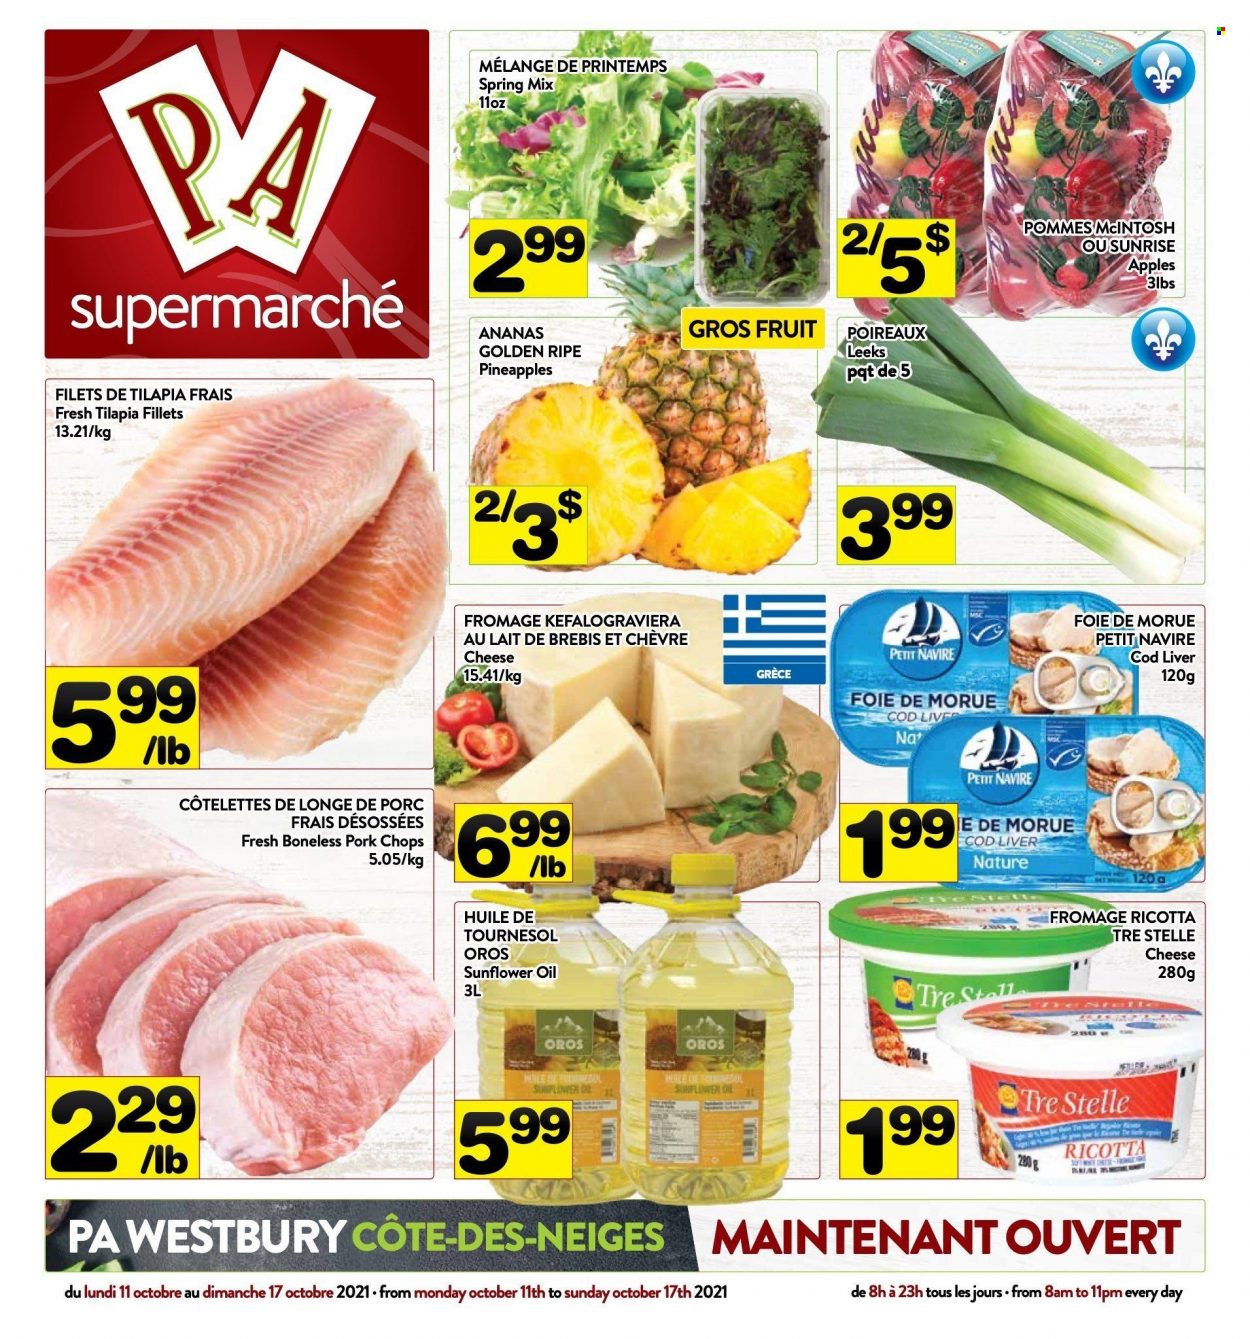 thumbnail - Circulaire PA Supermarché - 11 Octobre 2021 - 17 Octobre 2021 - Produits soldés - poireau, pommes, ananas, morue, Petit Navire, fromage, ricotta, huile. Page 1.